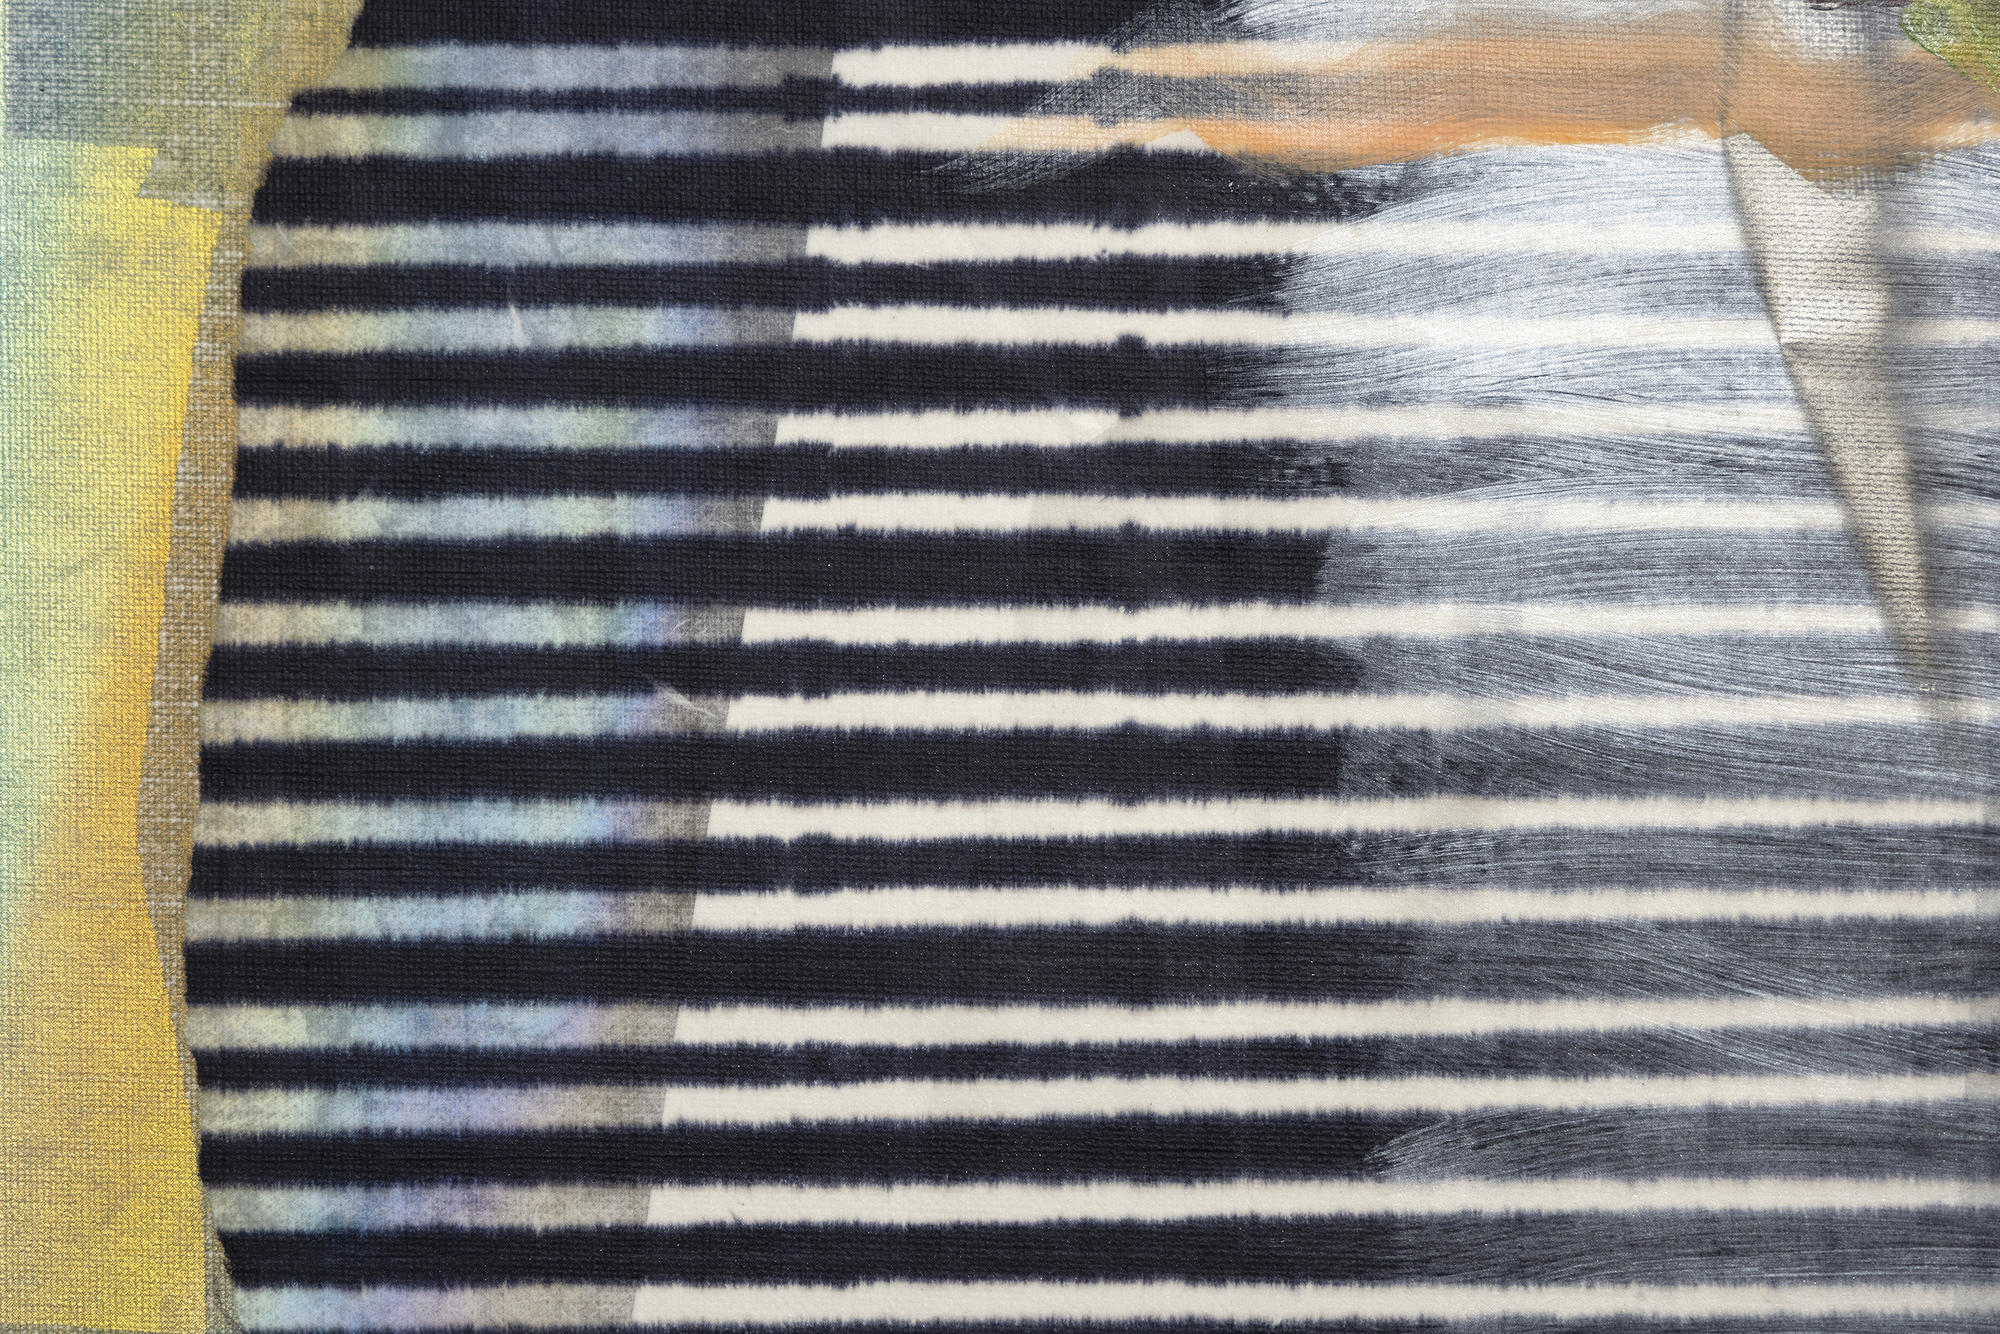 لاري بيل - عرش باتريوتس - زيت ومعدن على قماش - 63 × 41 1/2 × 1 1/4 بوصة.